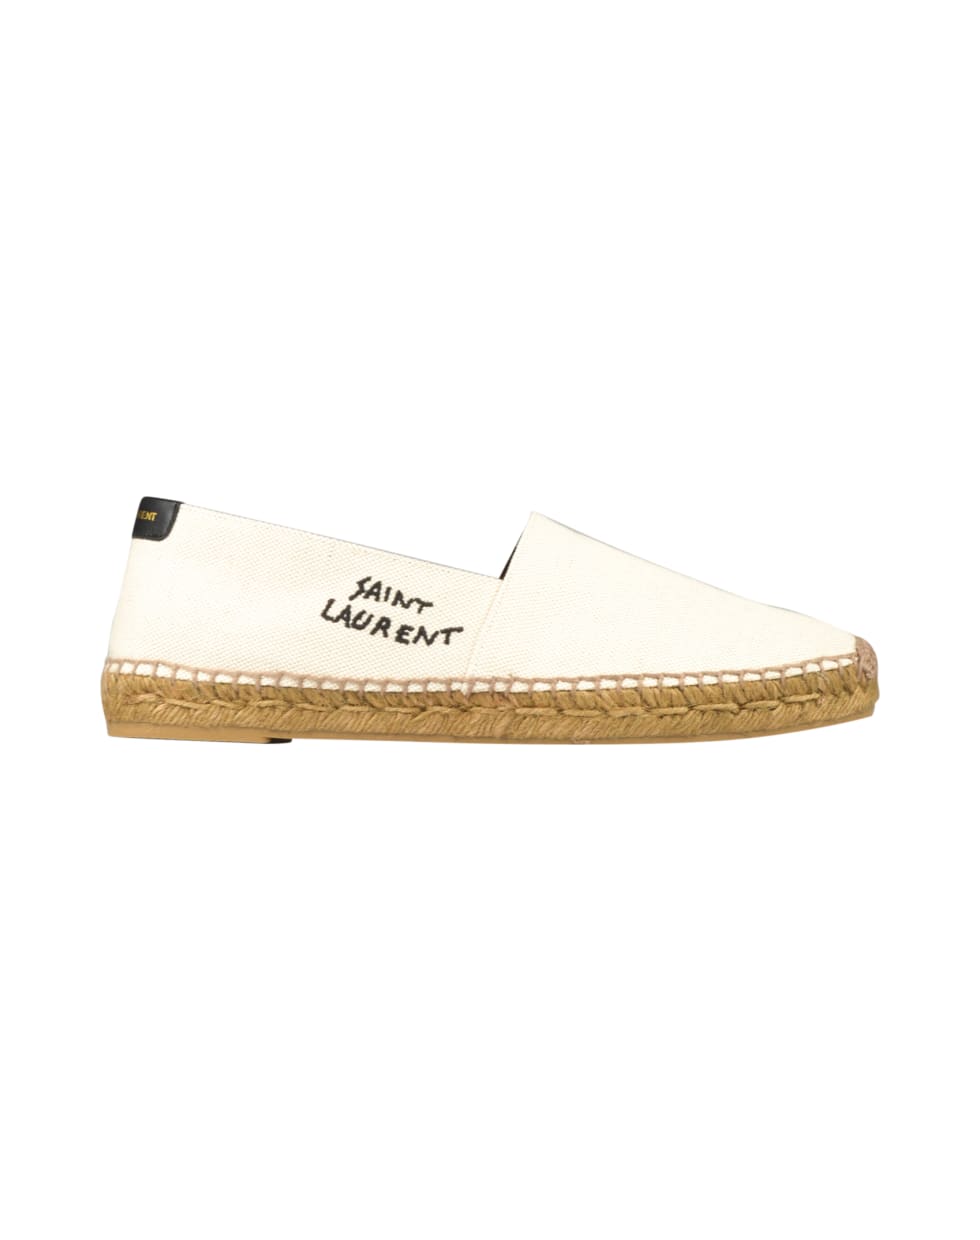 Saint Laurent Shoes - White